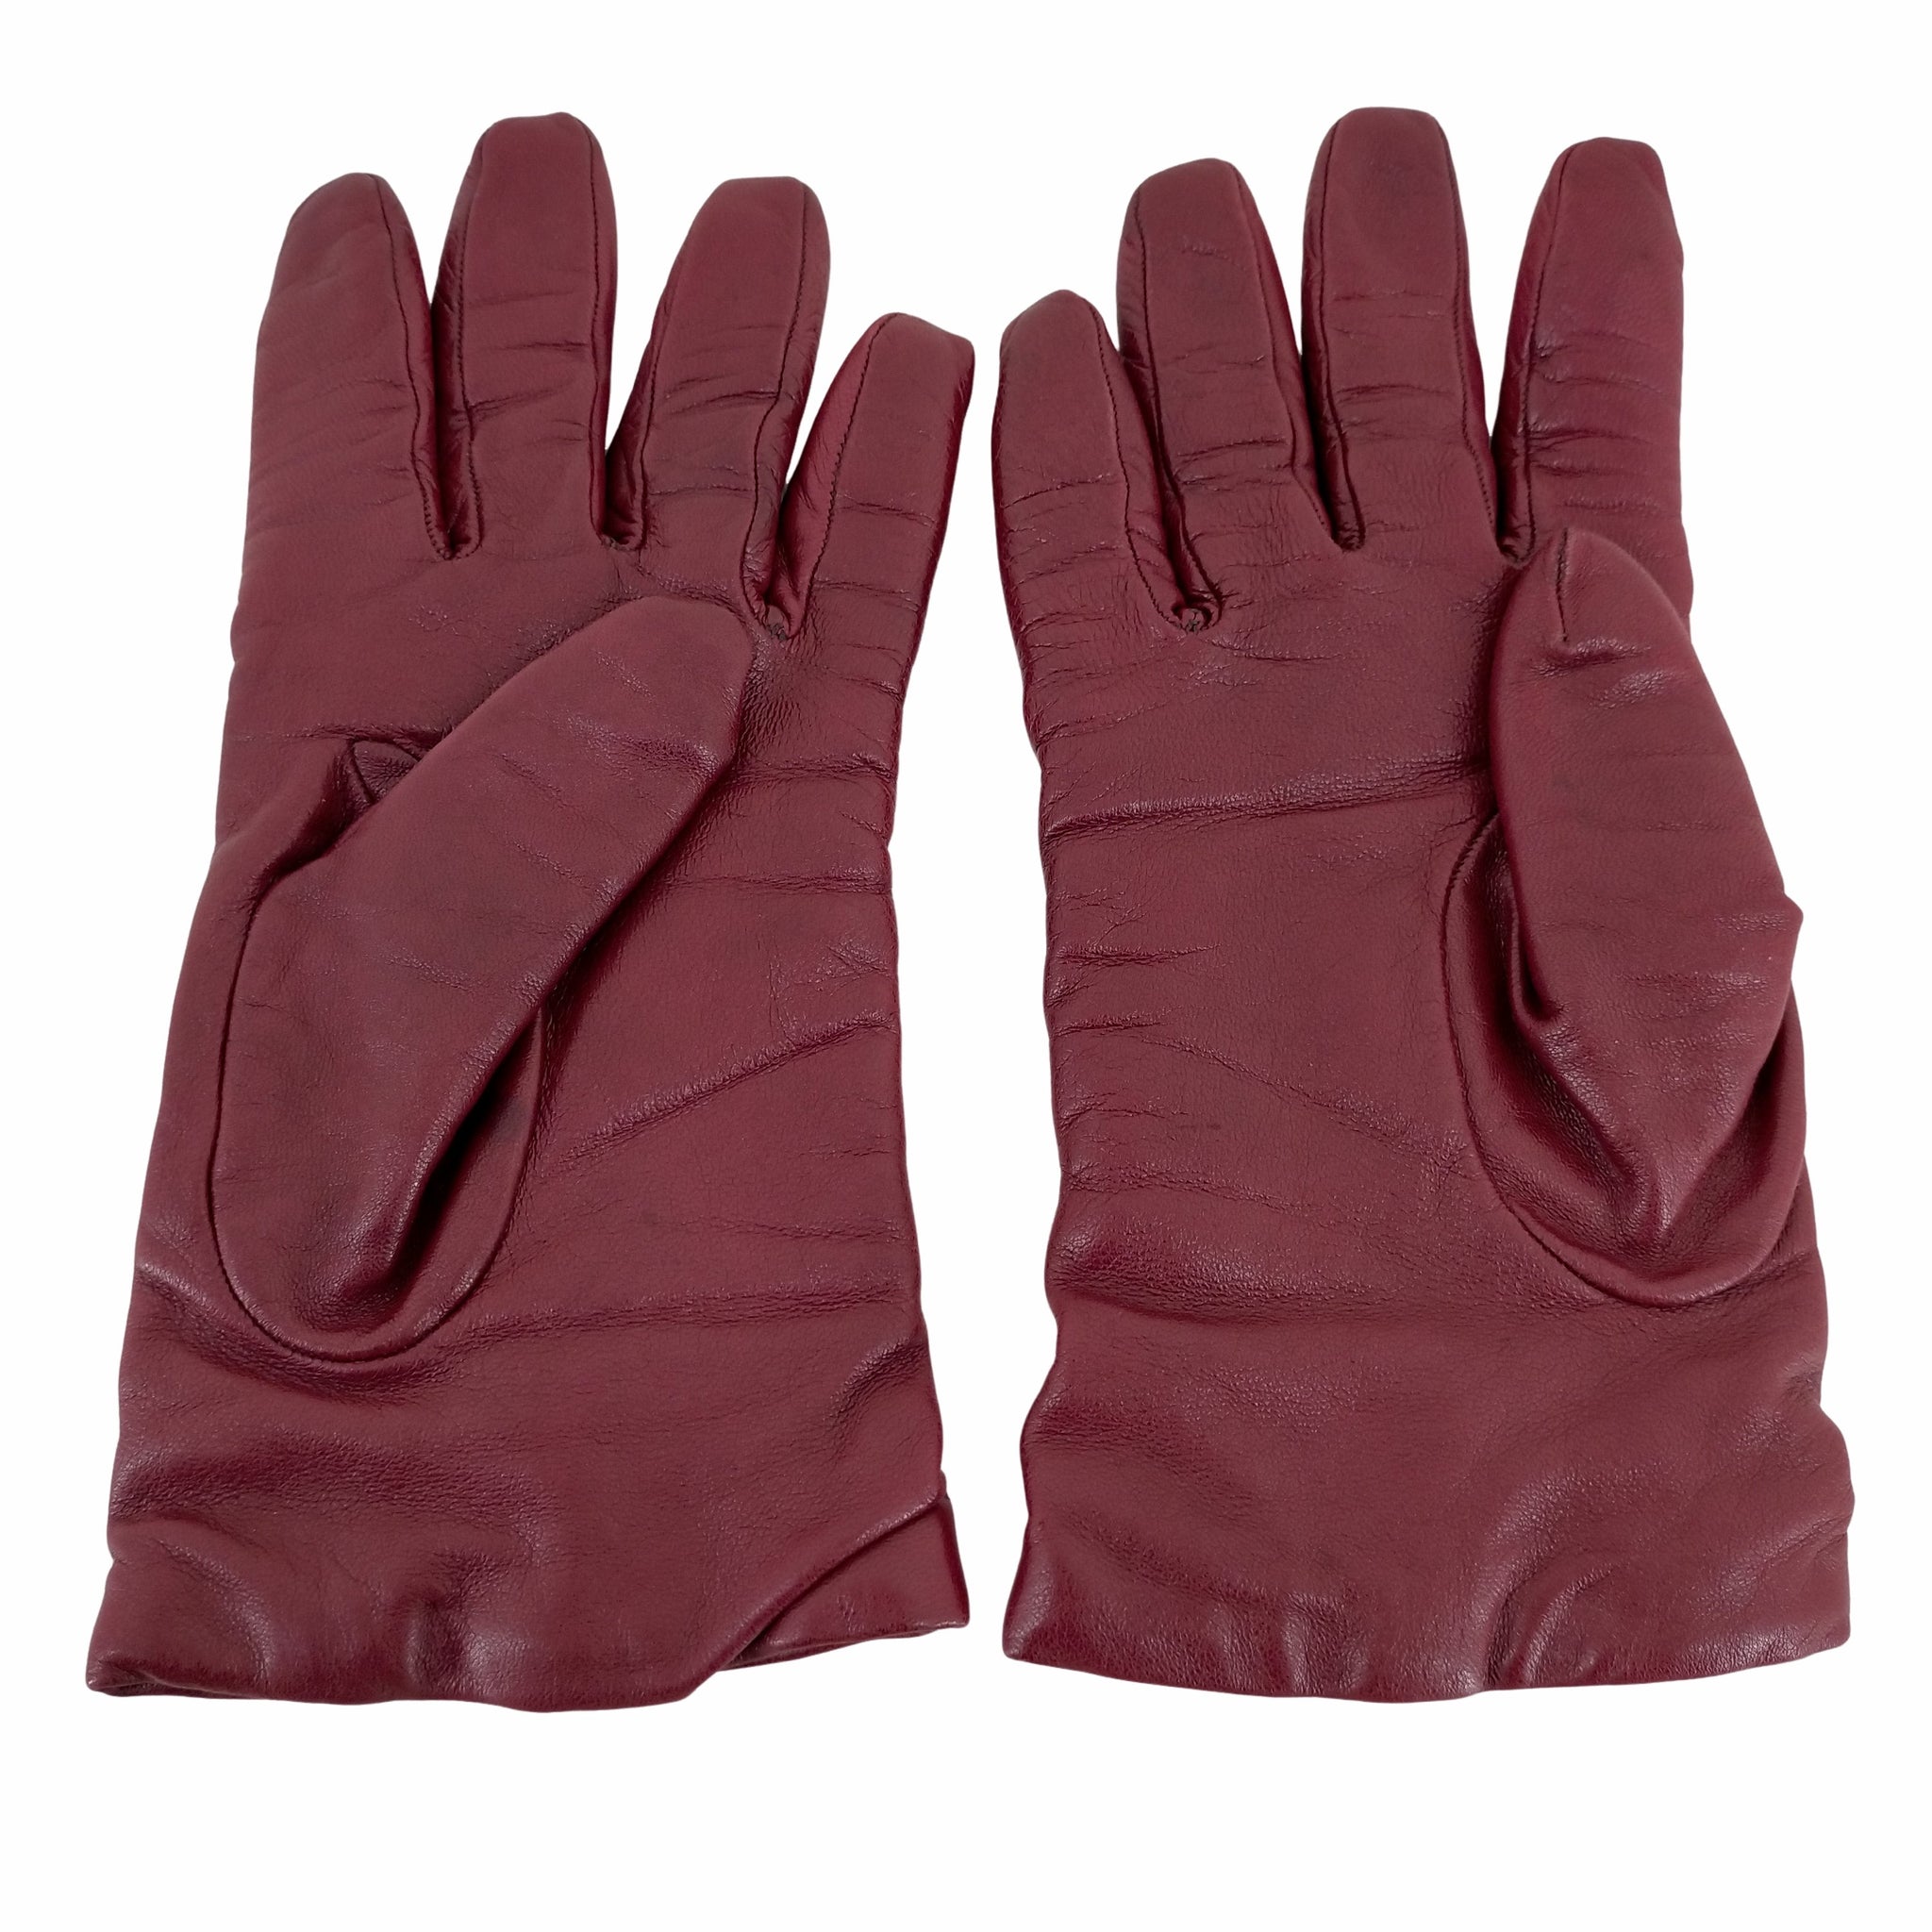 Sermoneta glovesの革手袋 イタリア製なかなか使う機会が無いので出品